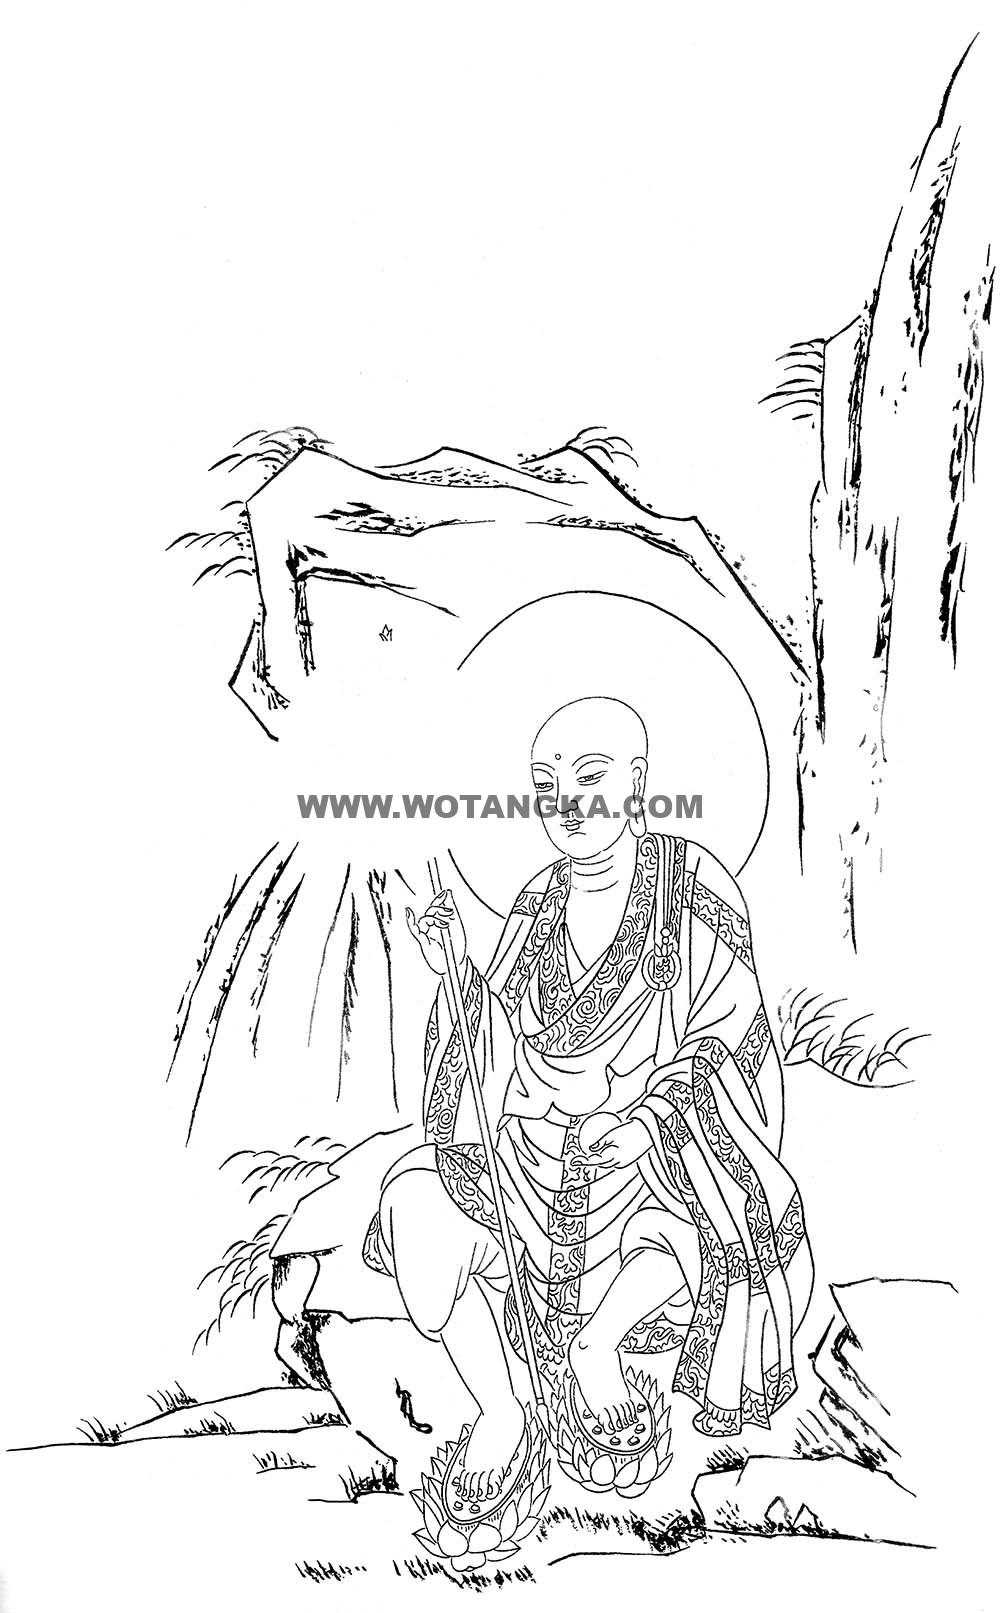 沃唐卡-唐卡白描线稿编号RD17729：地藏王菩萨静坐图